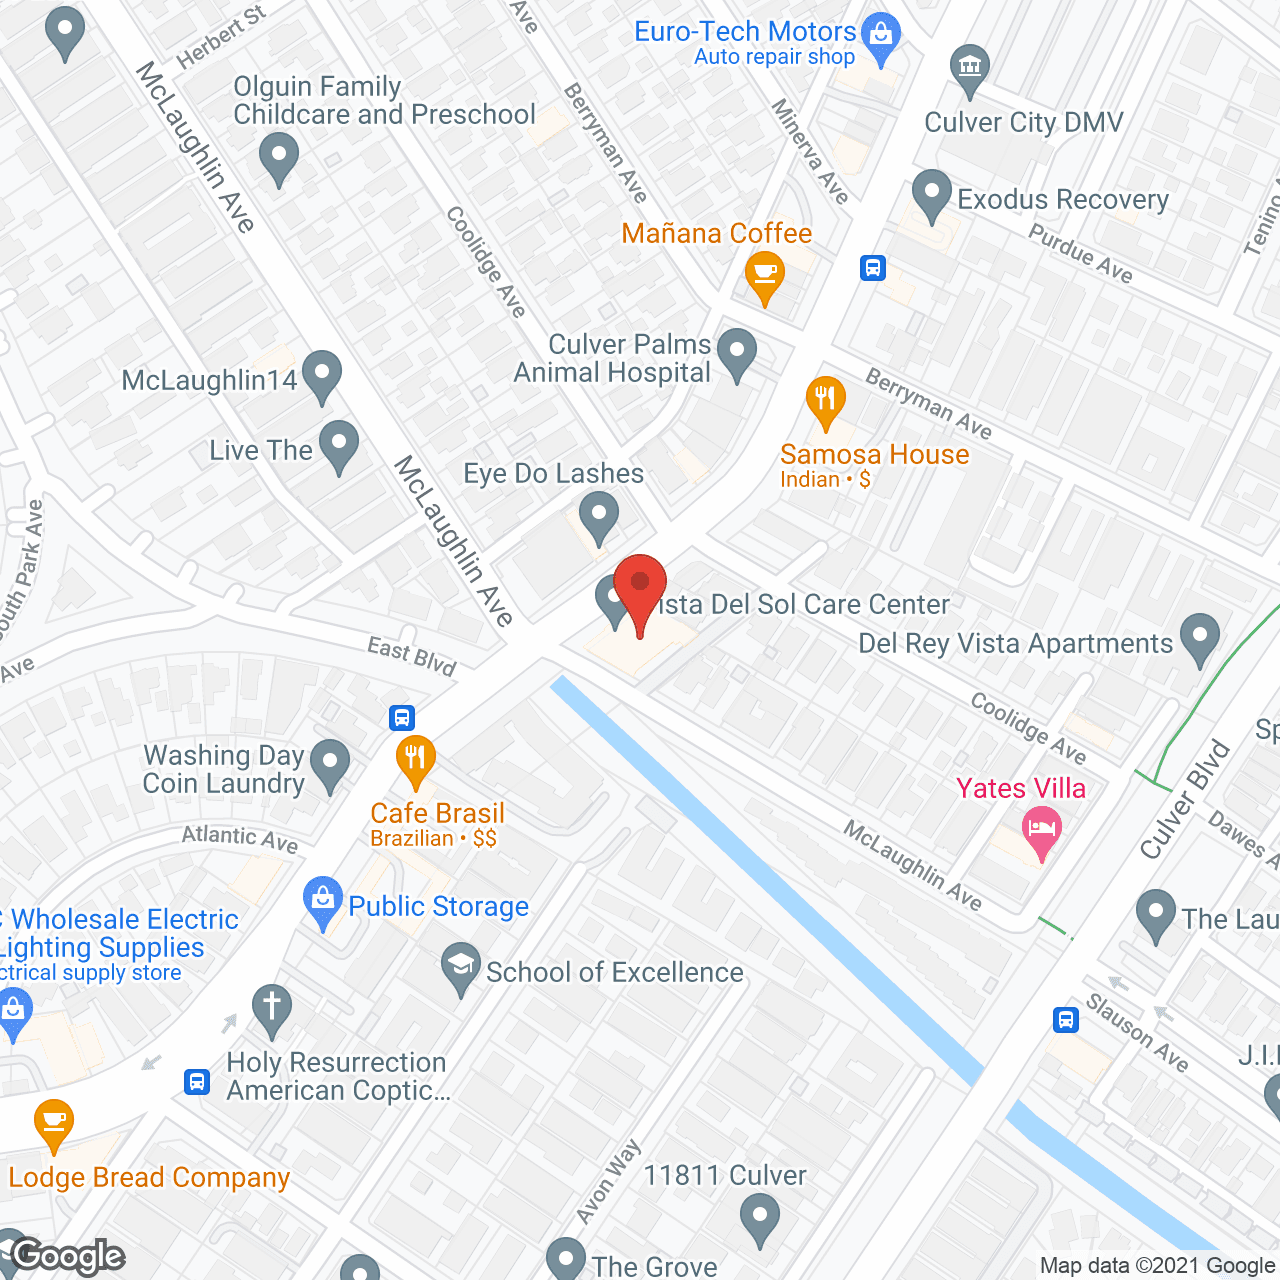 Vista Del Sol Care Center in google map